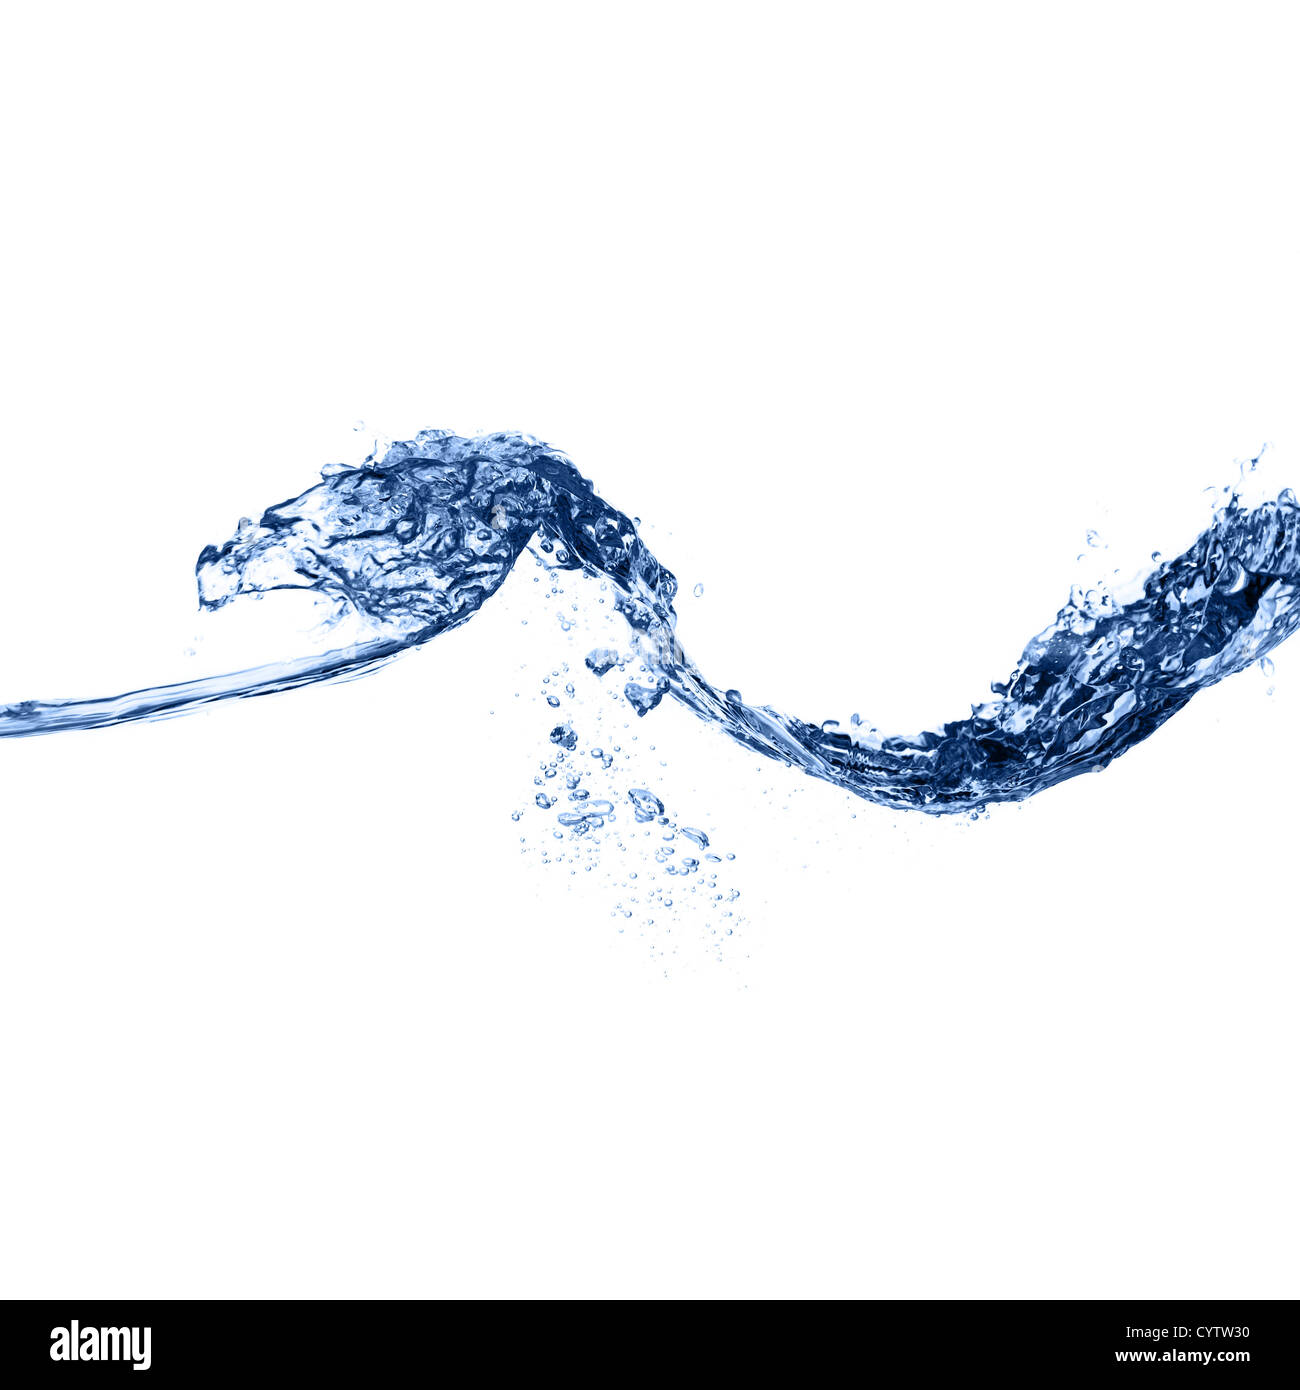 Des images nettes et claires, l'eau bleu photographié sur un fond blanc. Banque D'Images